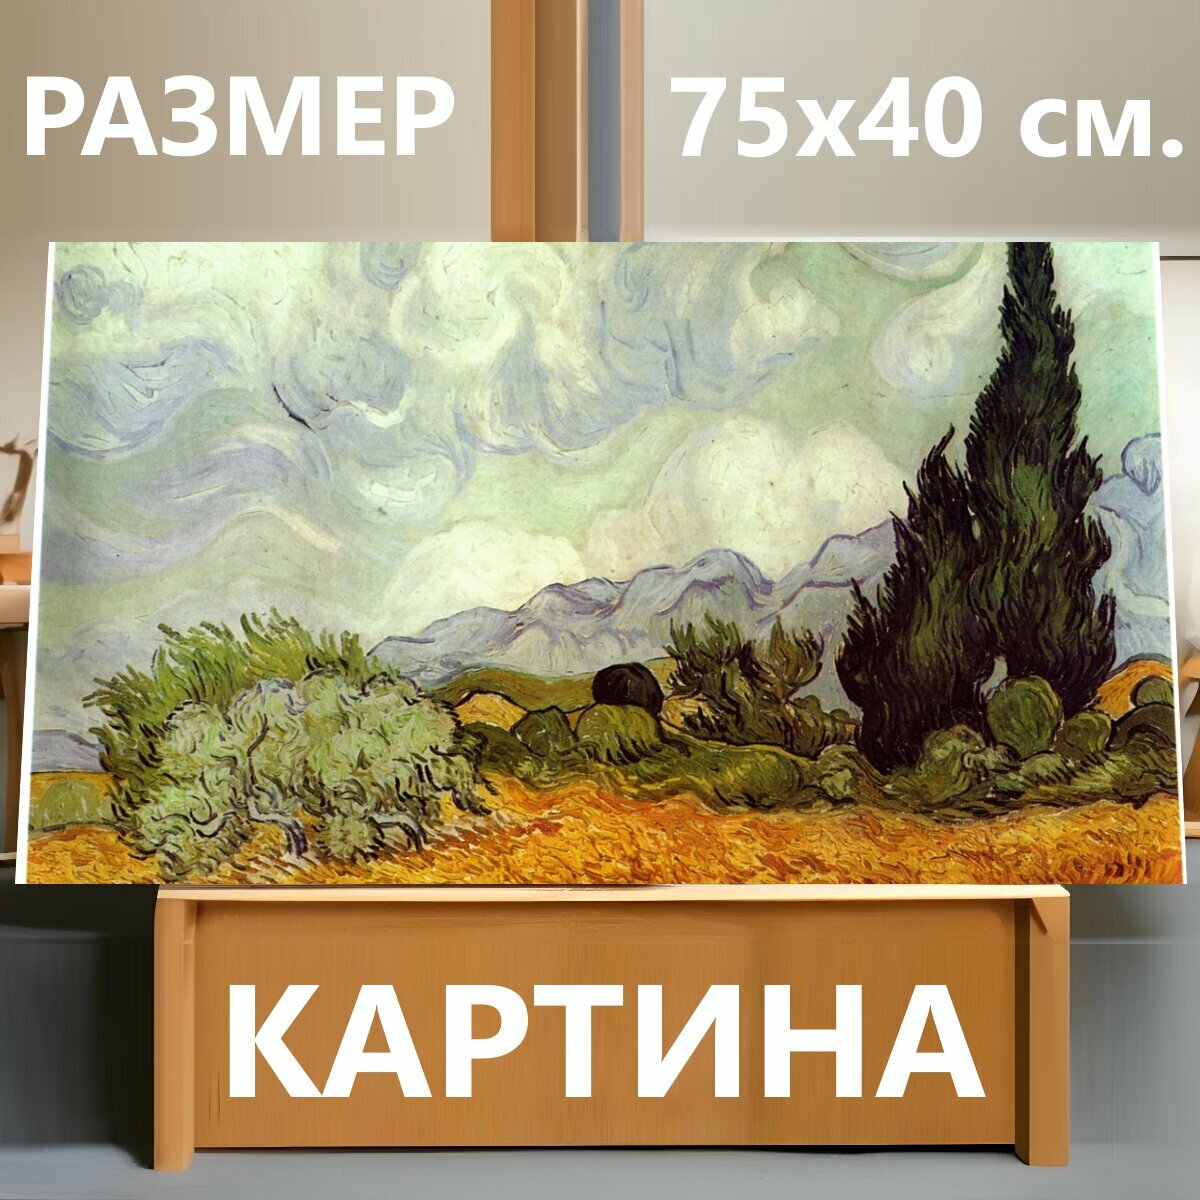 Картина на холсте "Ван гог, оранжевый, живопись маслом" на подрамнике 75х40 см. для интерьера